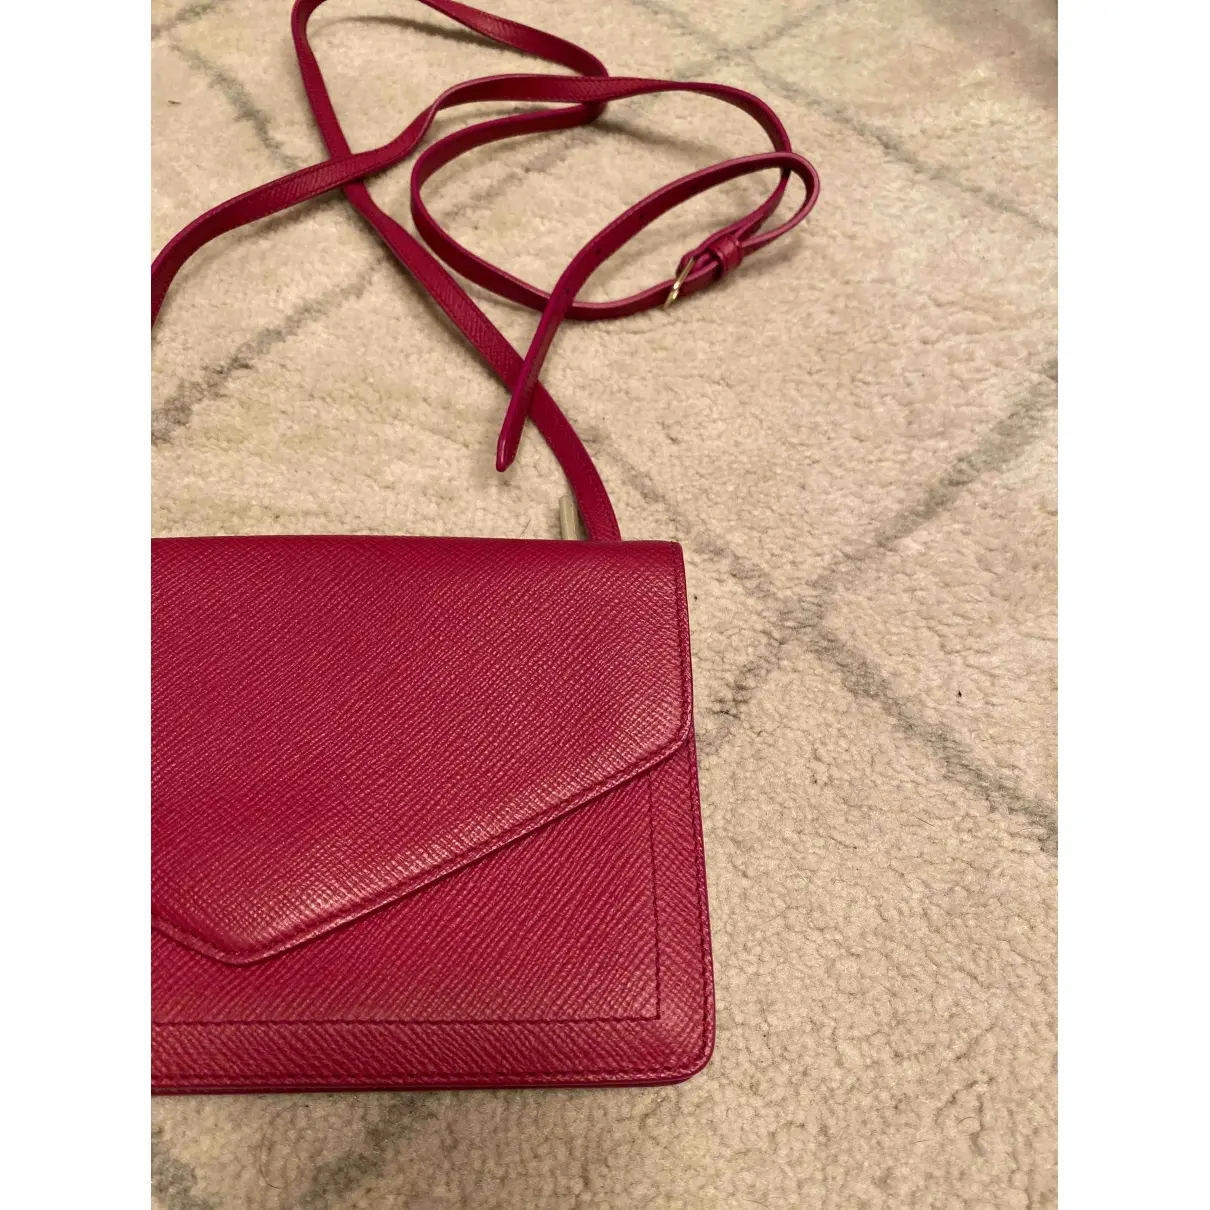 Smythson Leather handbag for sale